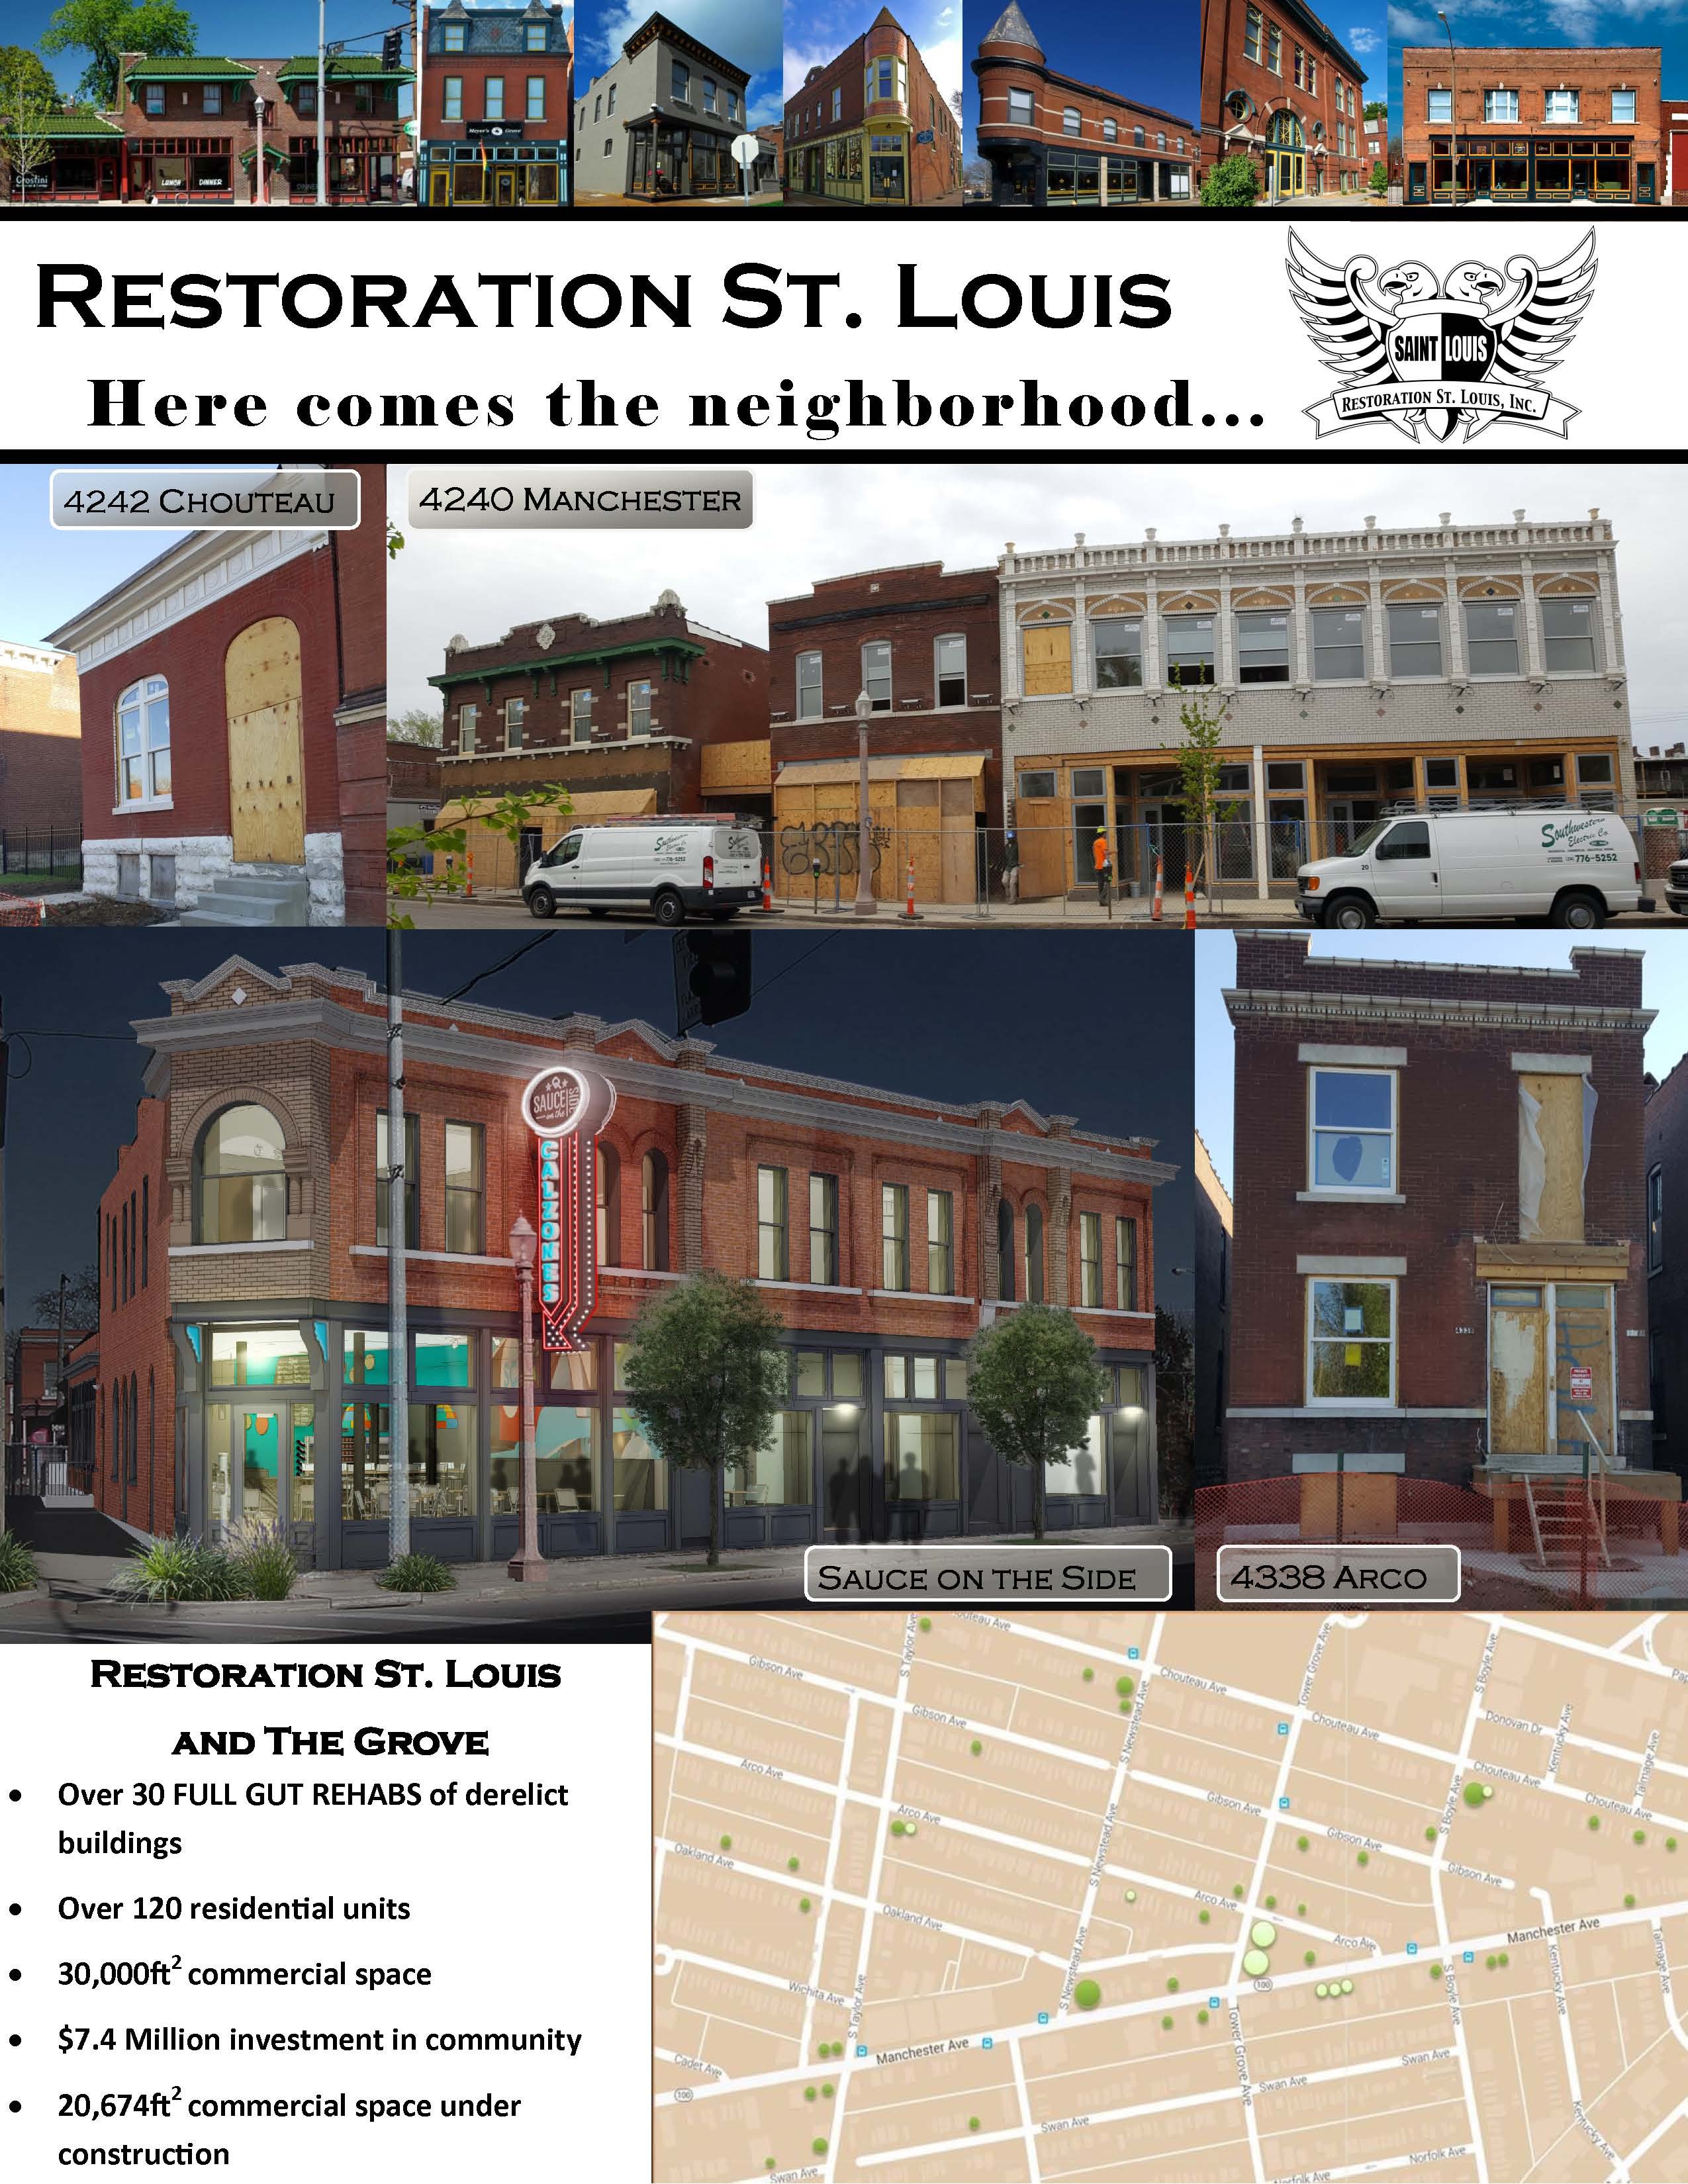 Restoration St. Louis